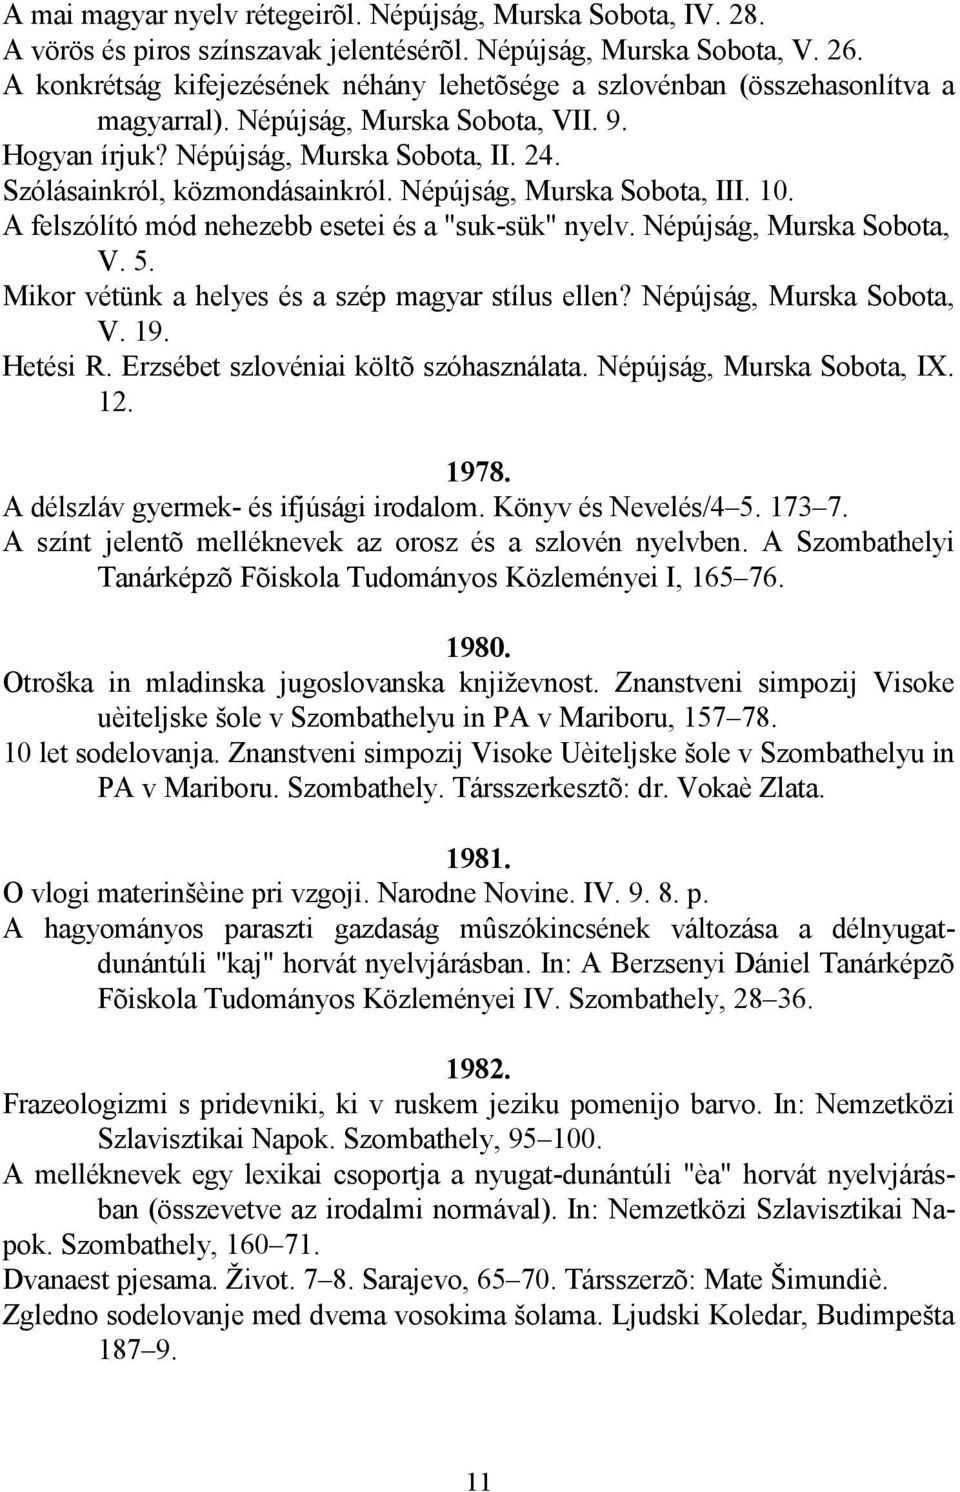 Szólásainkról, közmondásainkról. Népújság, Murska Sobota, III. 10. A felszólító mód nehezebb esetei és a "suk-sük" nyelv. Népújság, Murska Sobota, V. 5.